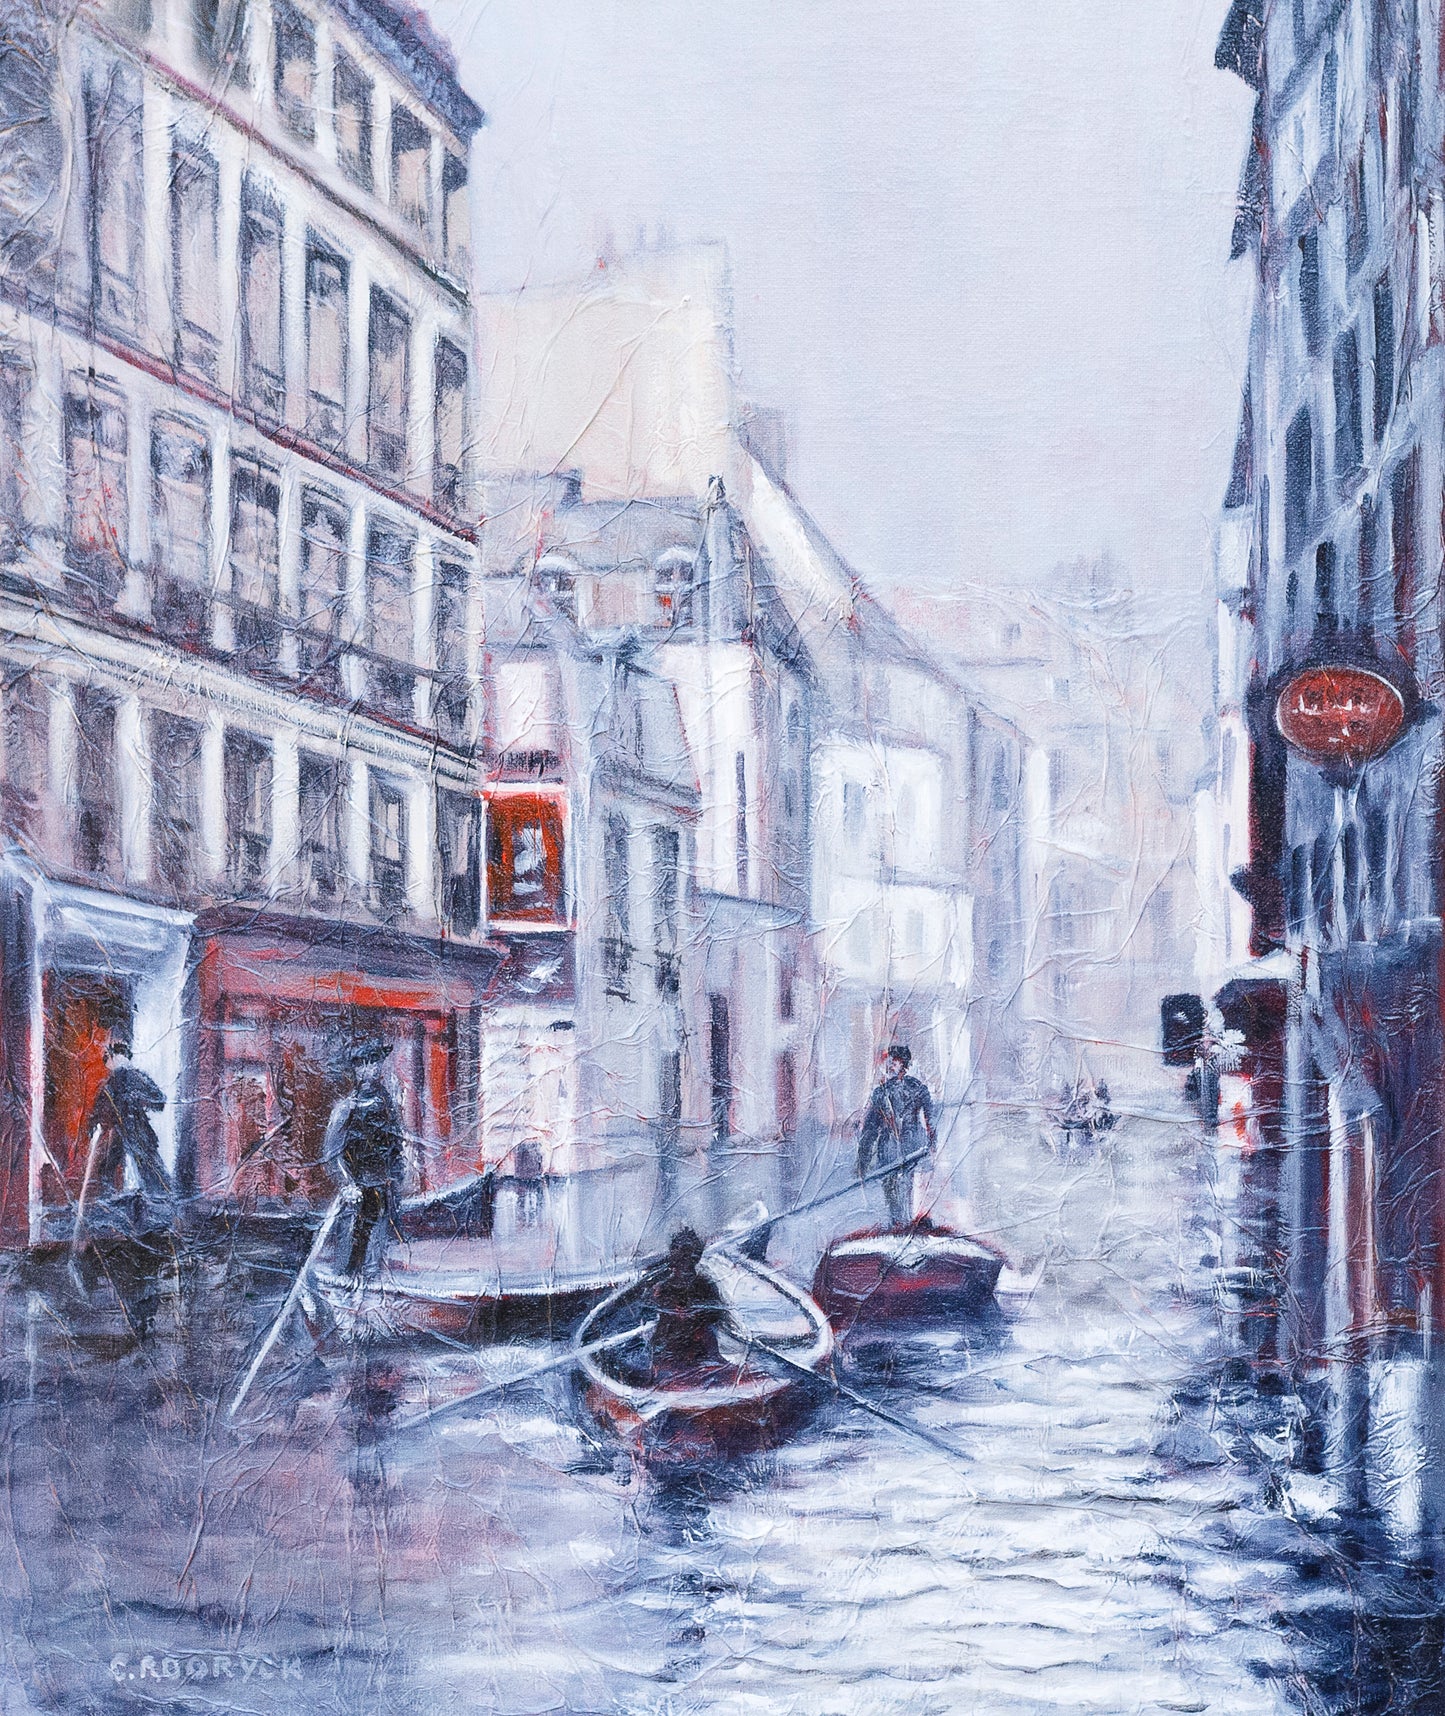 Paris floods 1910